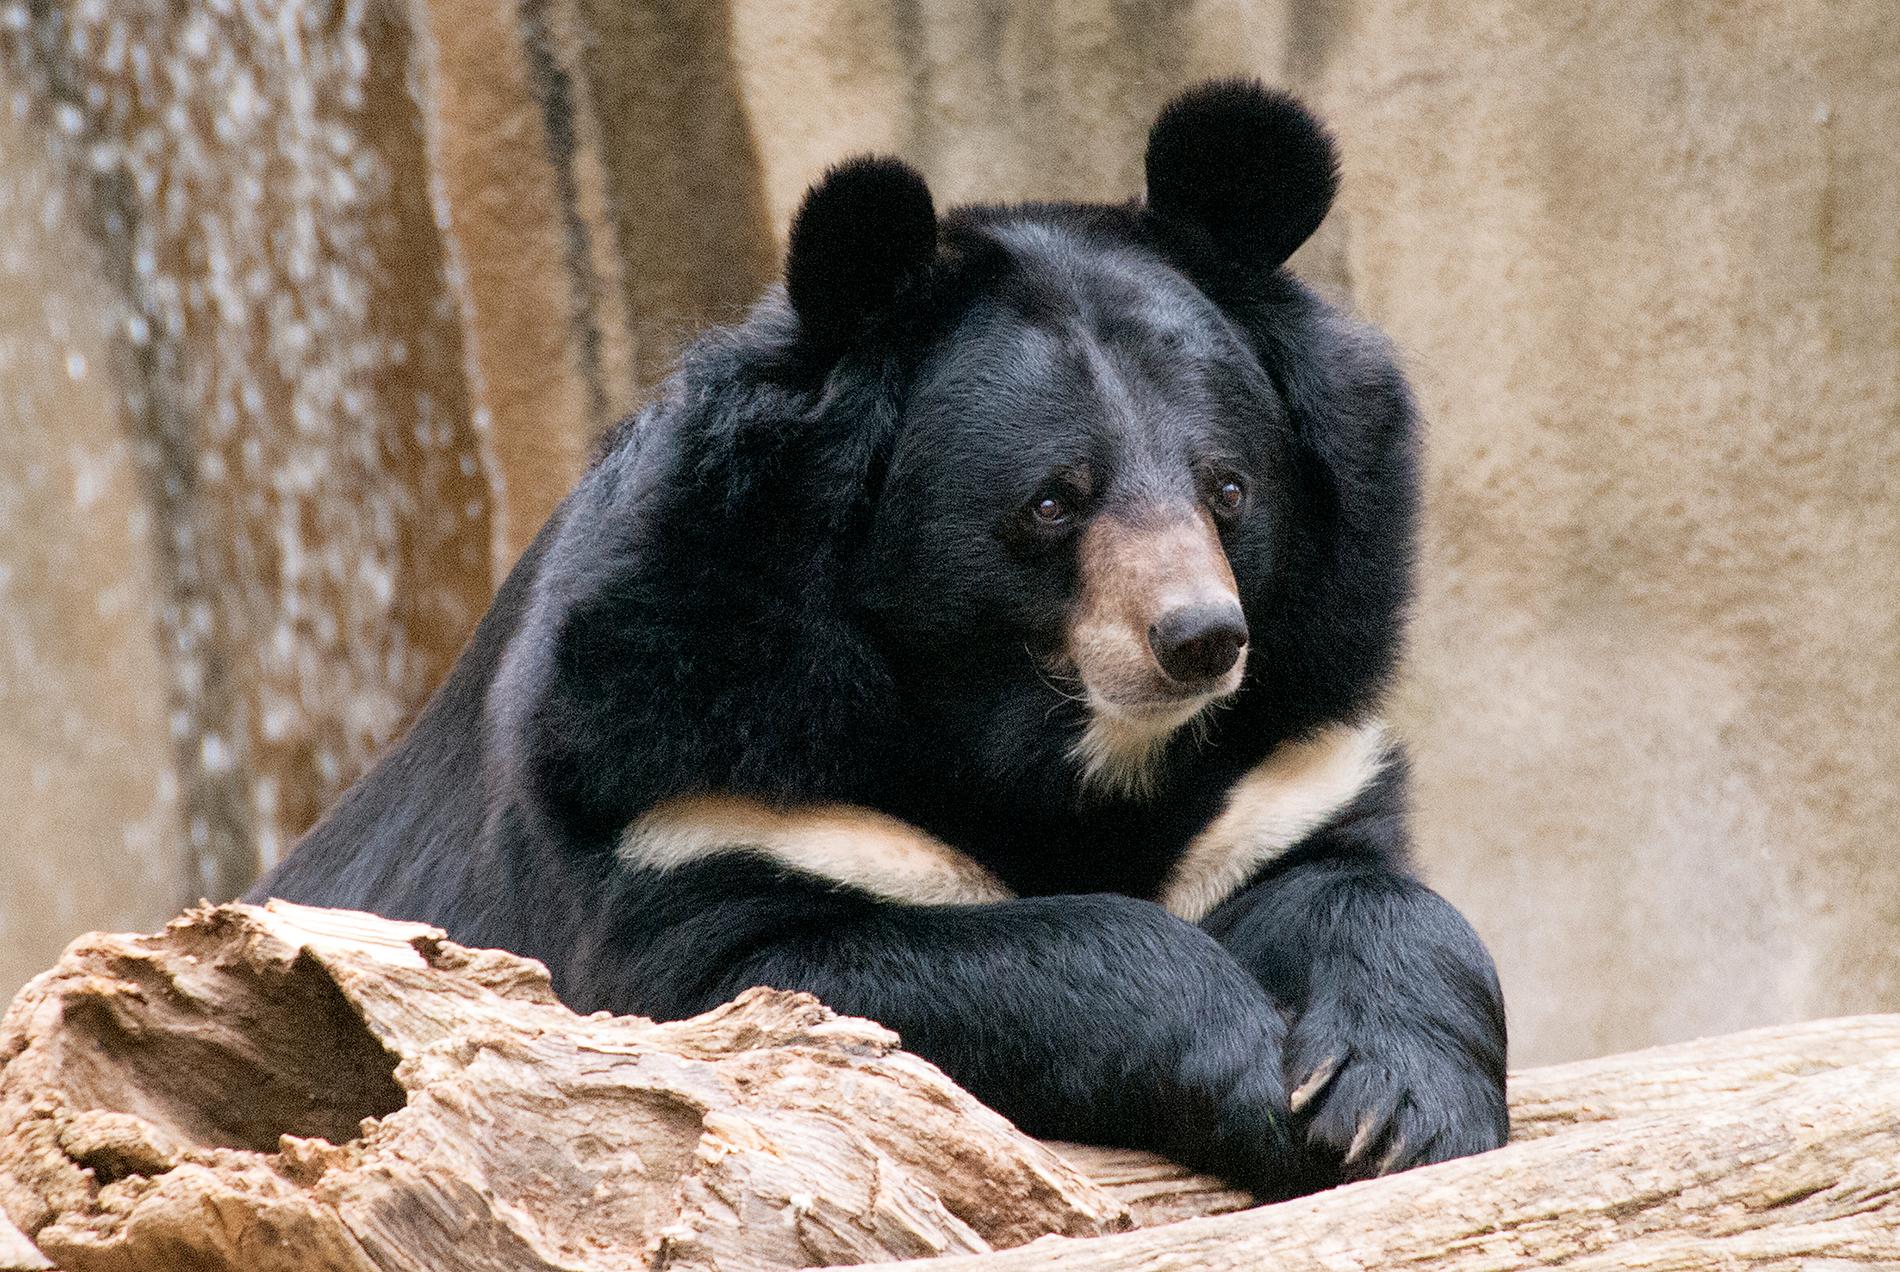 En man i Japan dödades av en kragbjörn som hölls i bur hus en privatperson. Björnen på bilden är en annan kragbjörn.